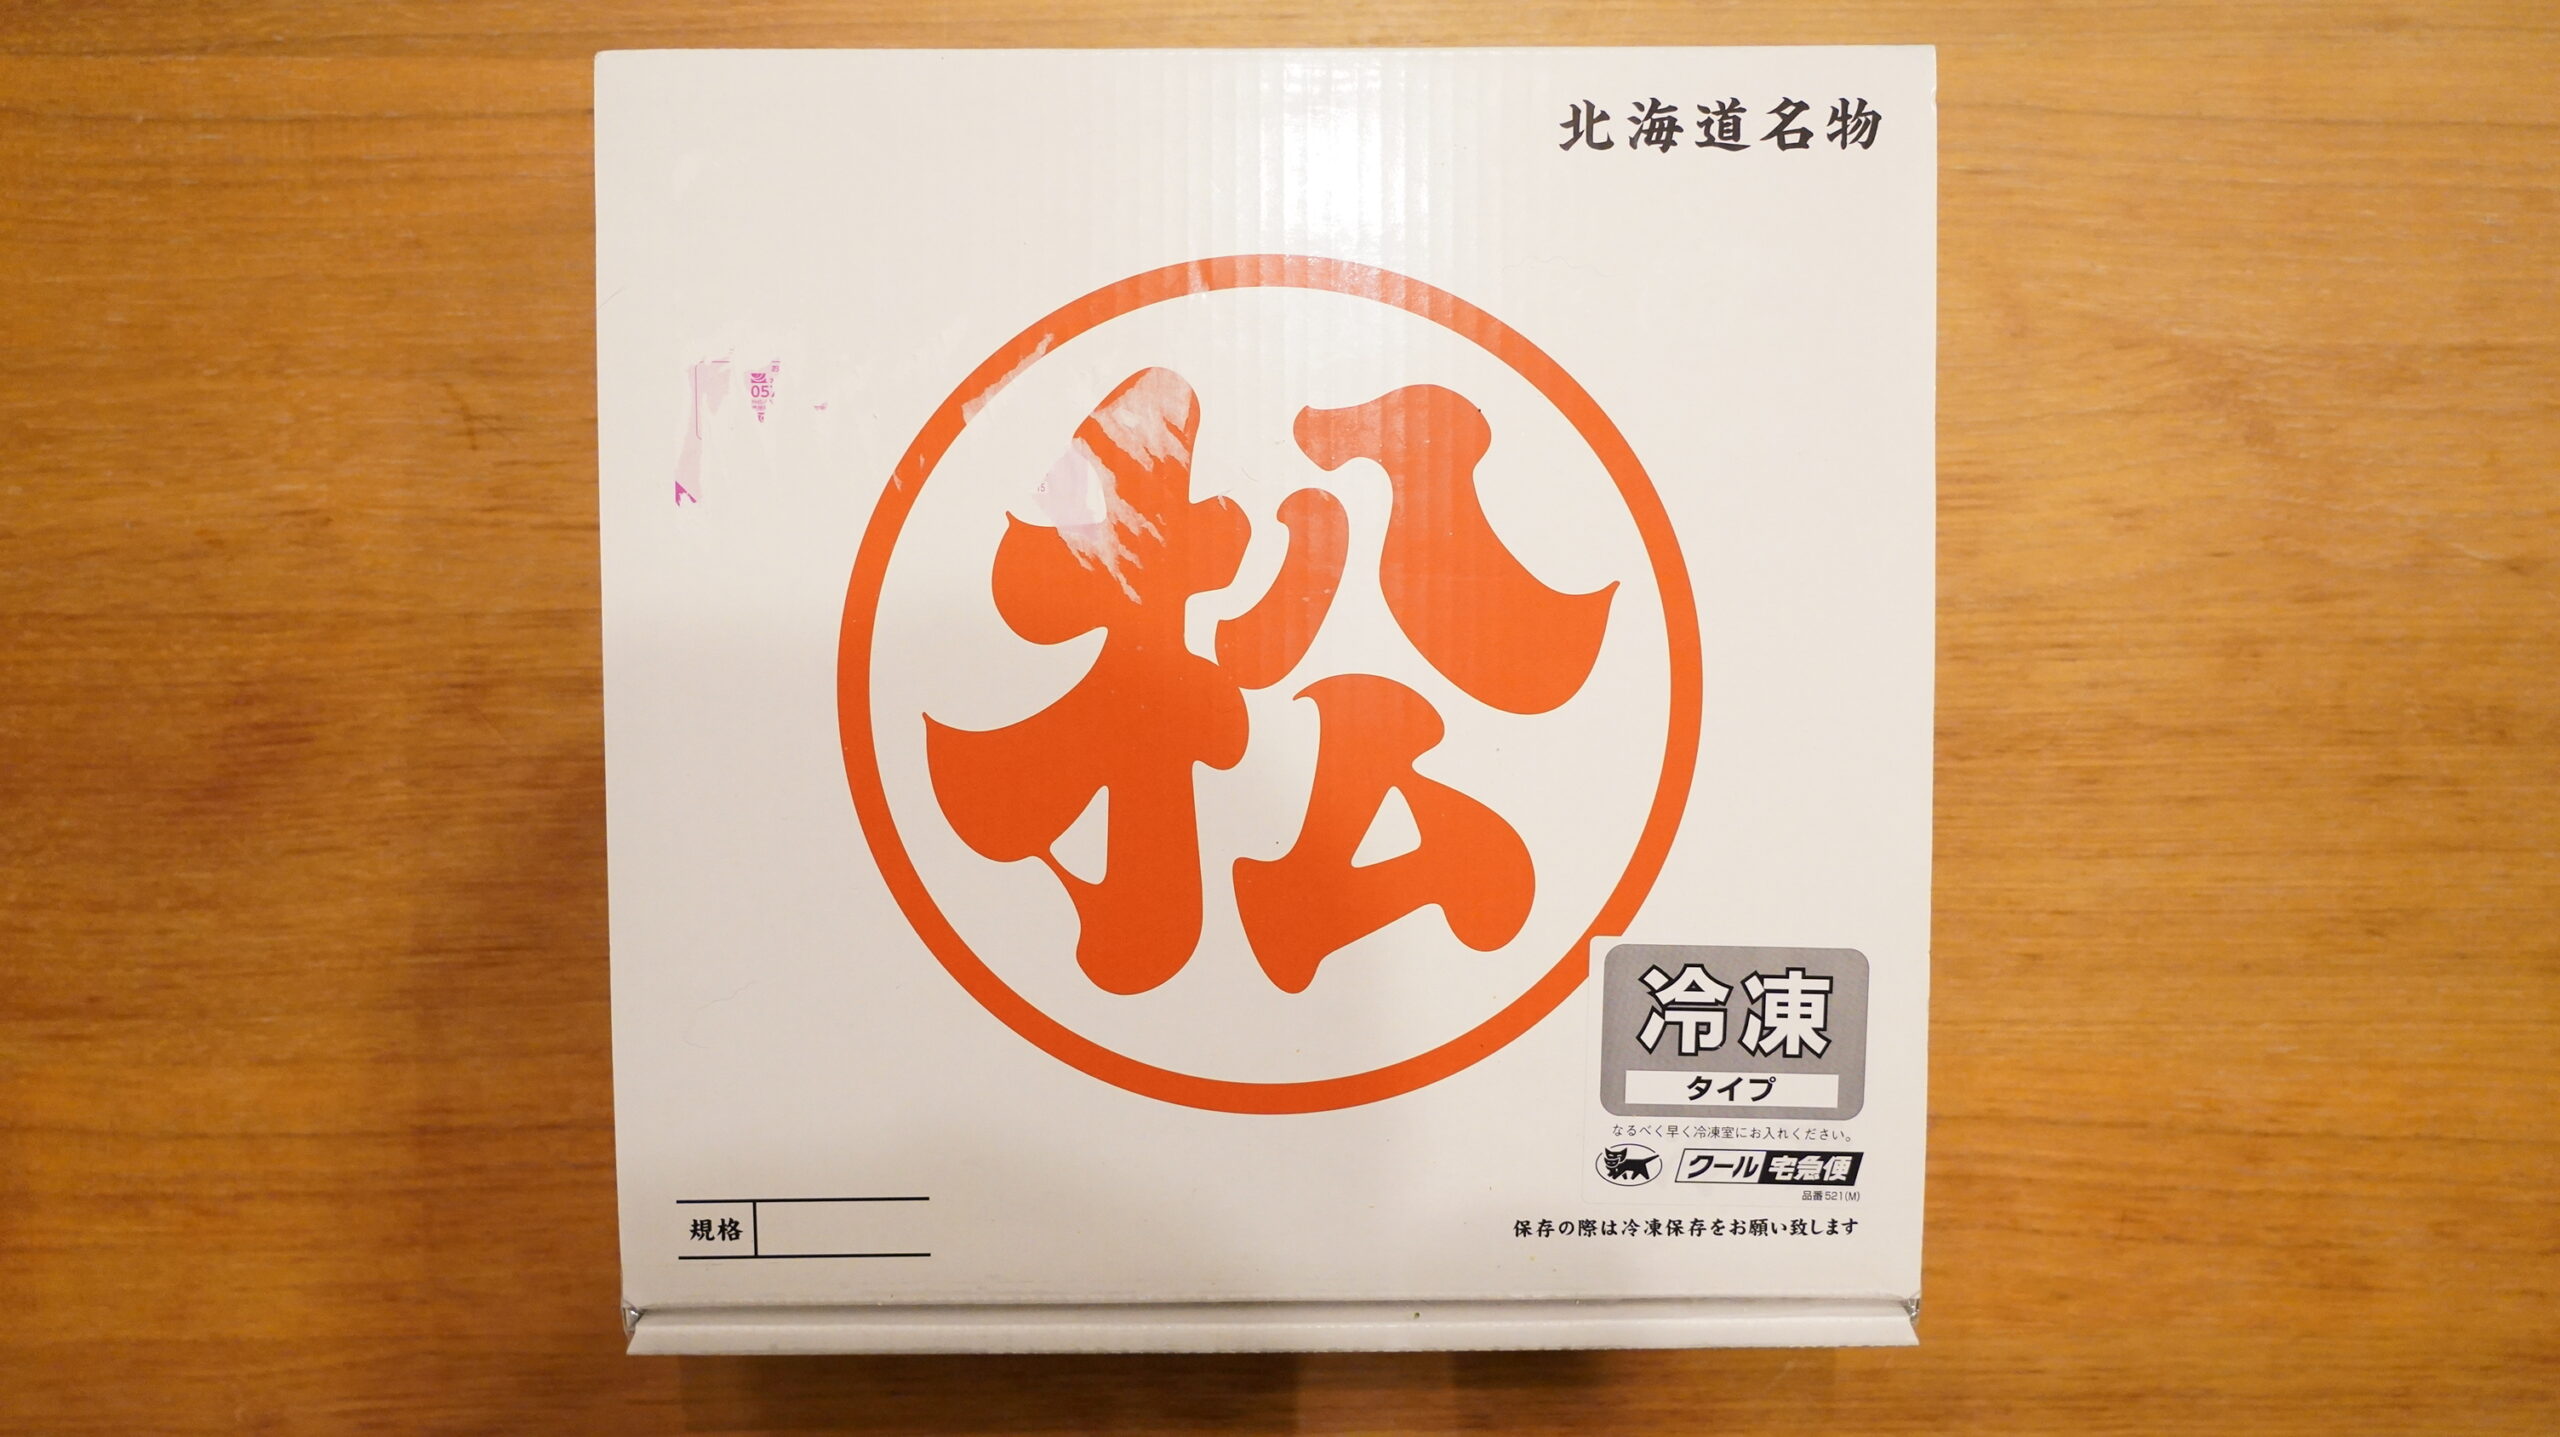 松尾ジンギスカンを通販でお取り寄せした冷凍マトン肉の箱の写真